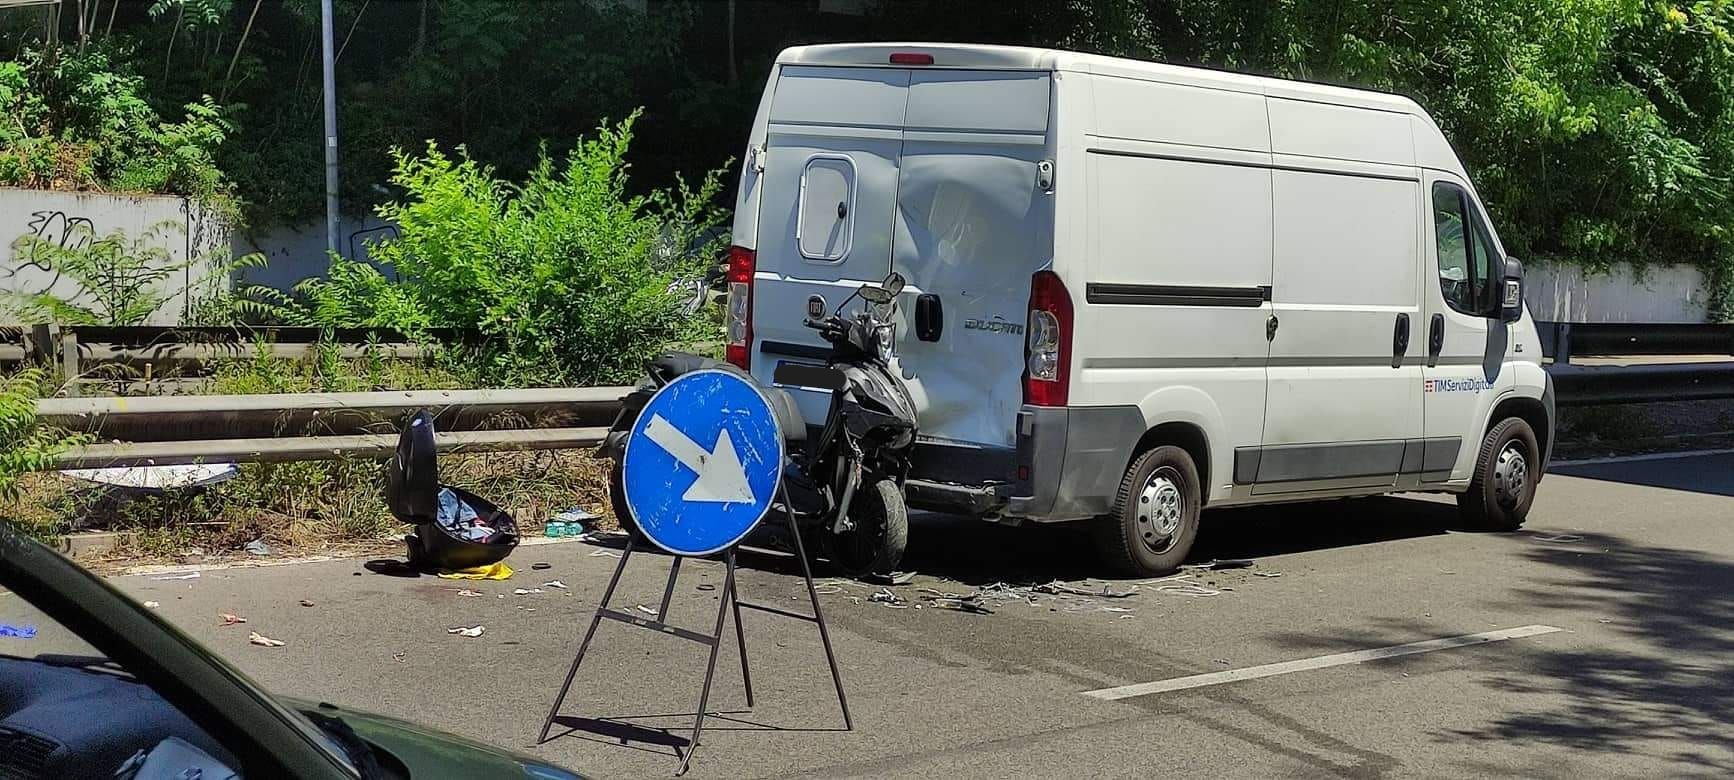 Il furgone e lo scooter dopo l'incidente in zona Prati Fiscali